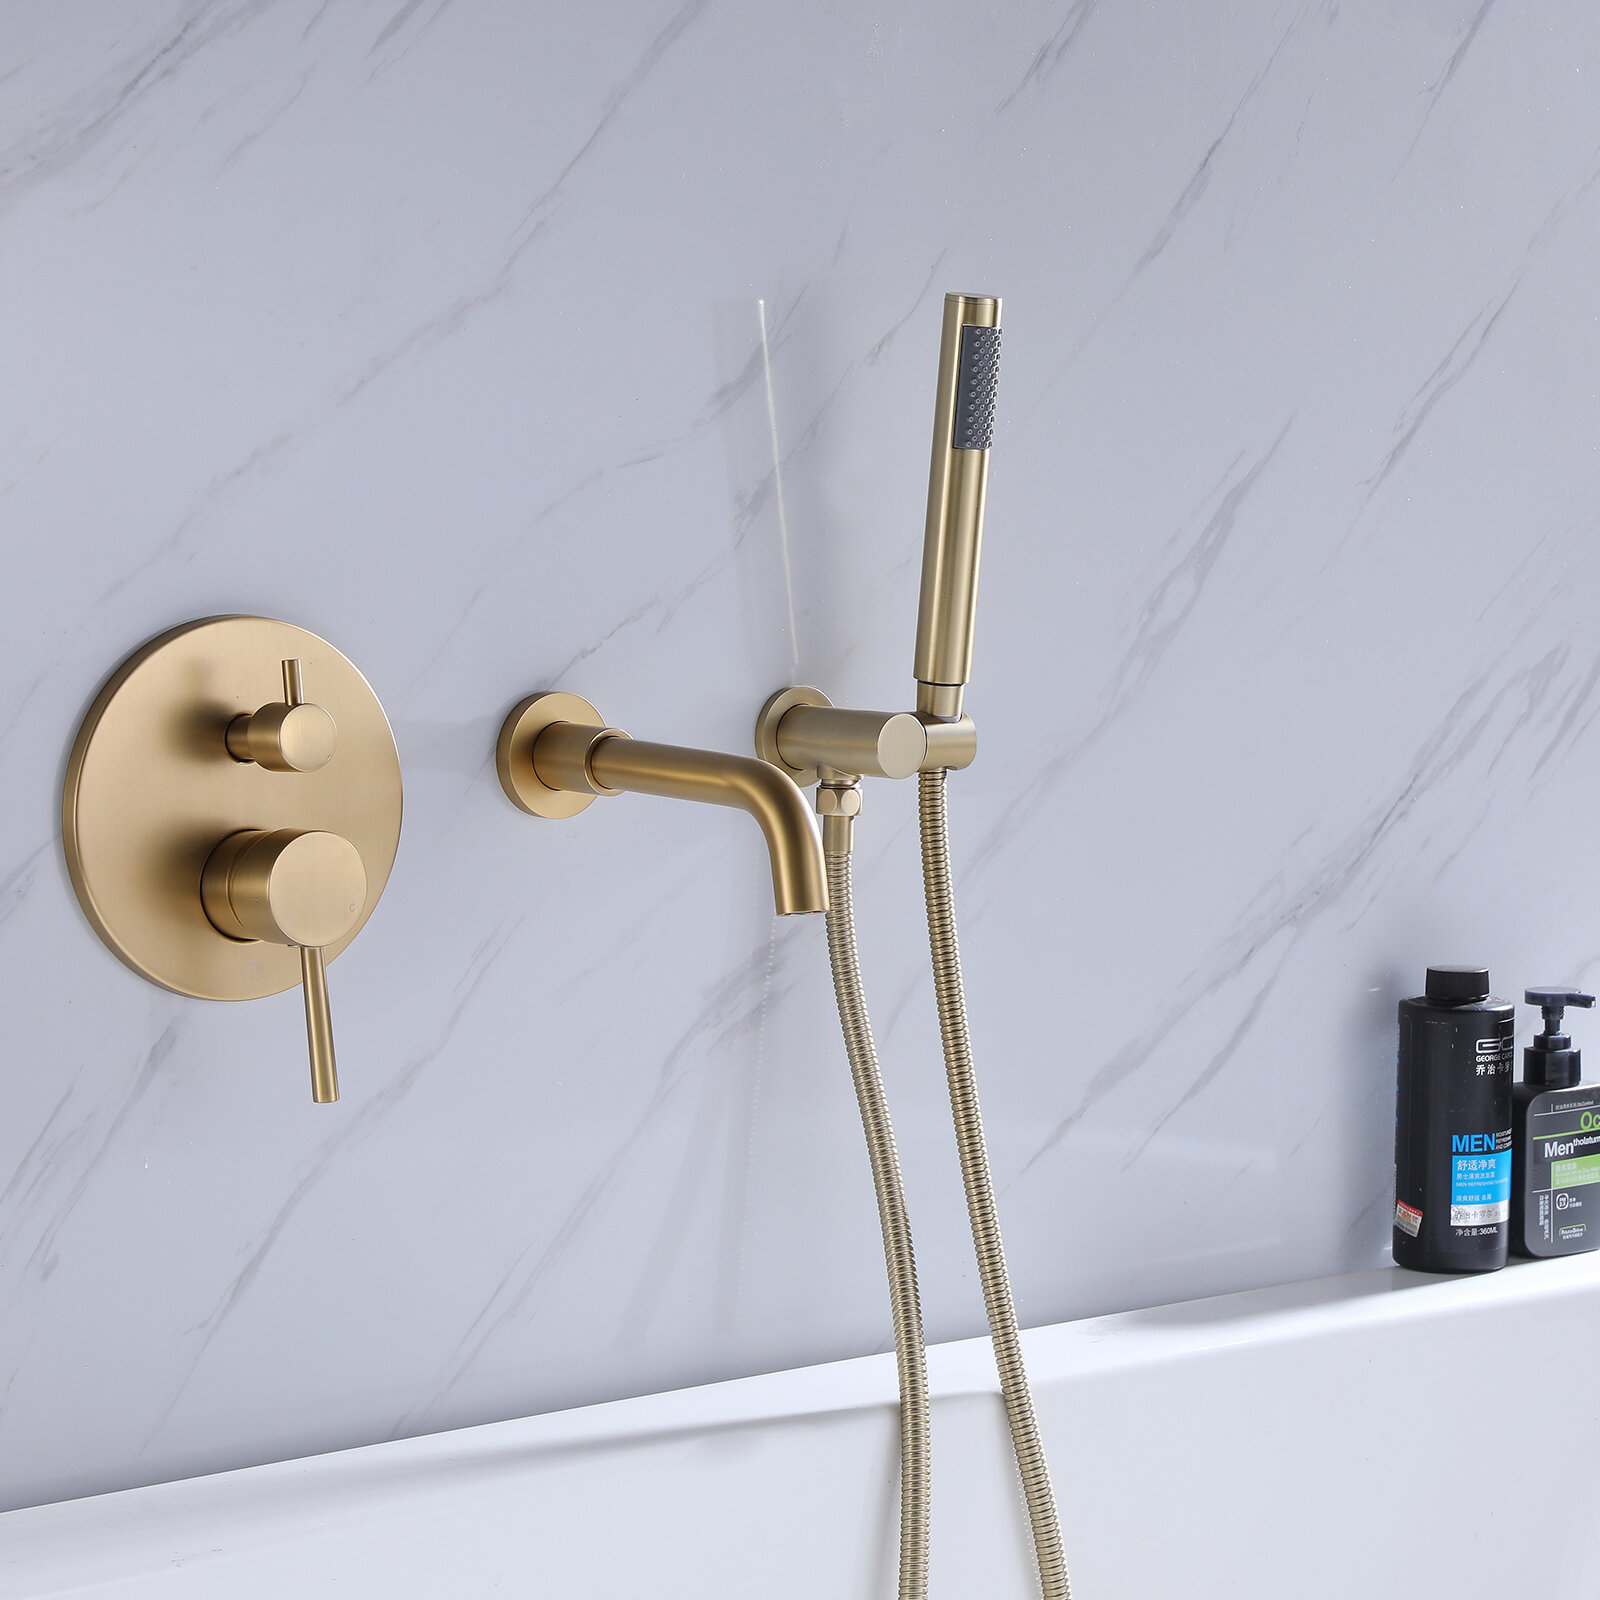 Details about   Brushed Gold Floor Mount Bath Tub Filler Complete Shower Units Handheld Spary 